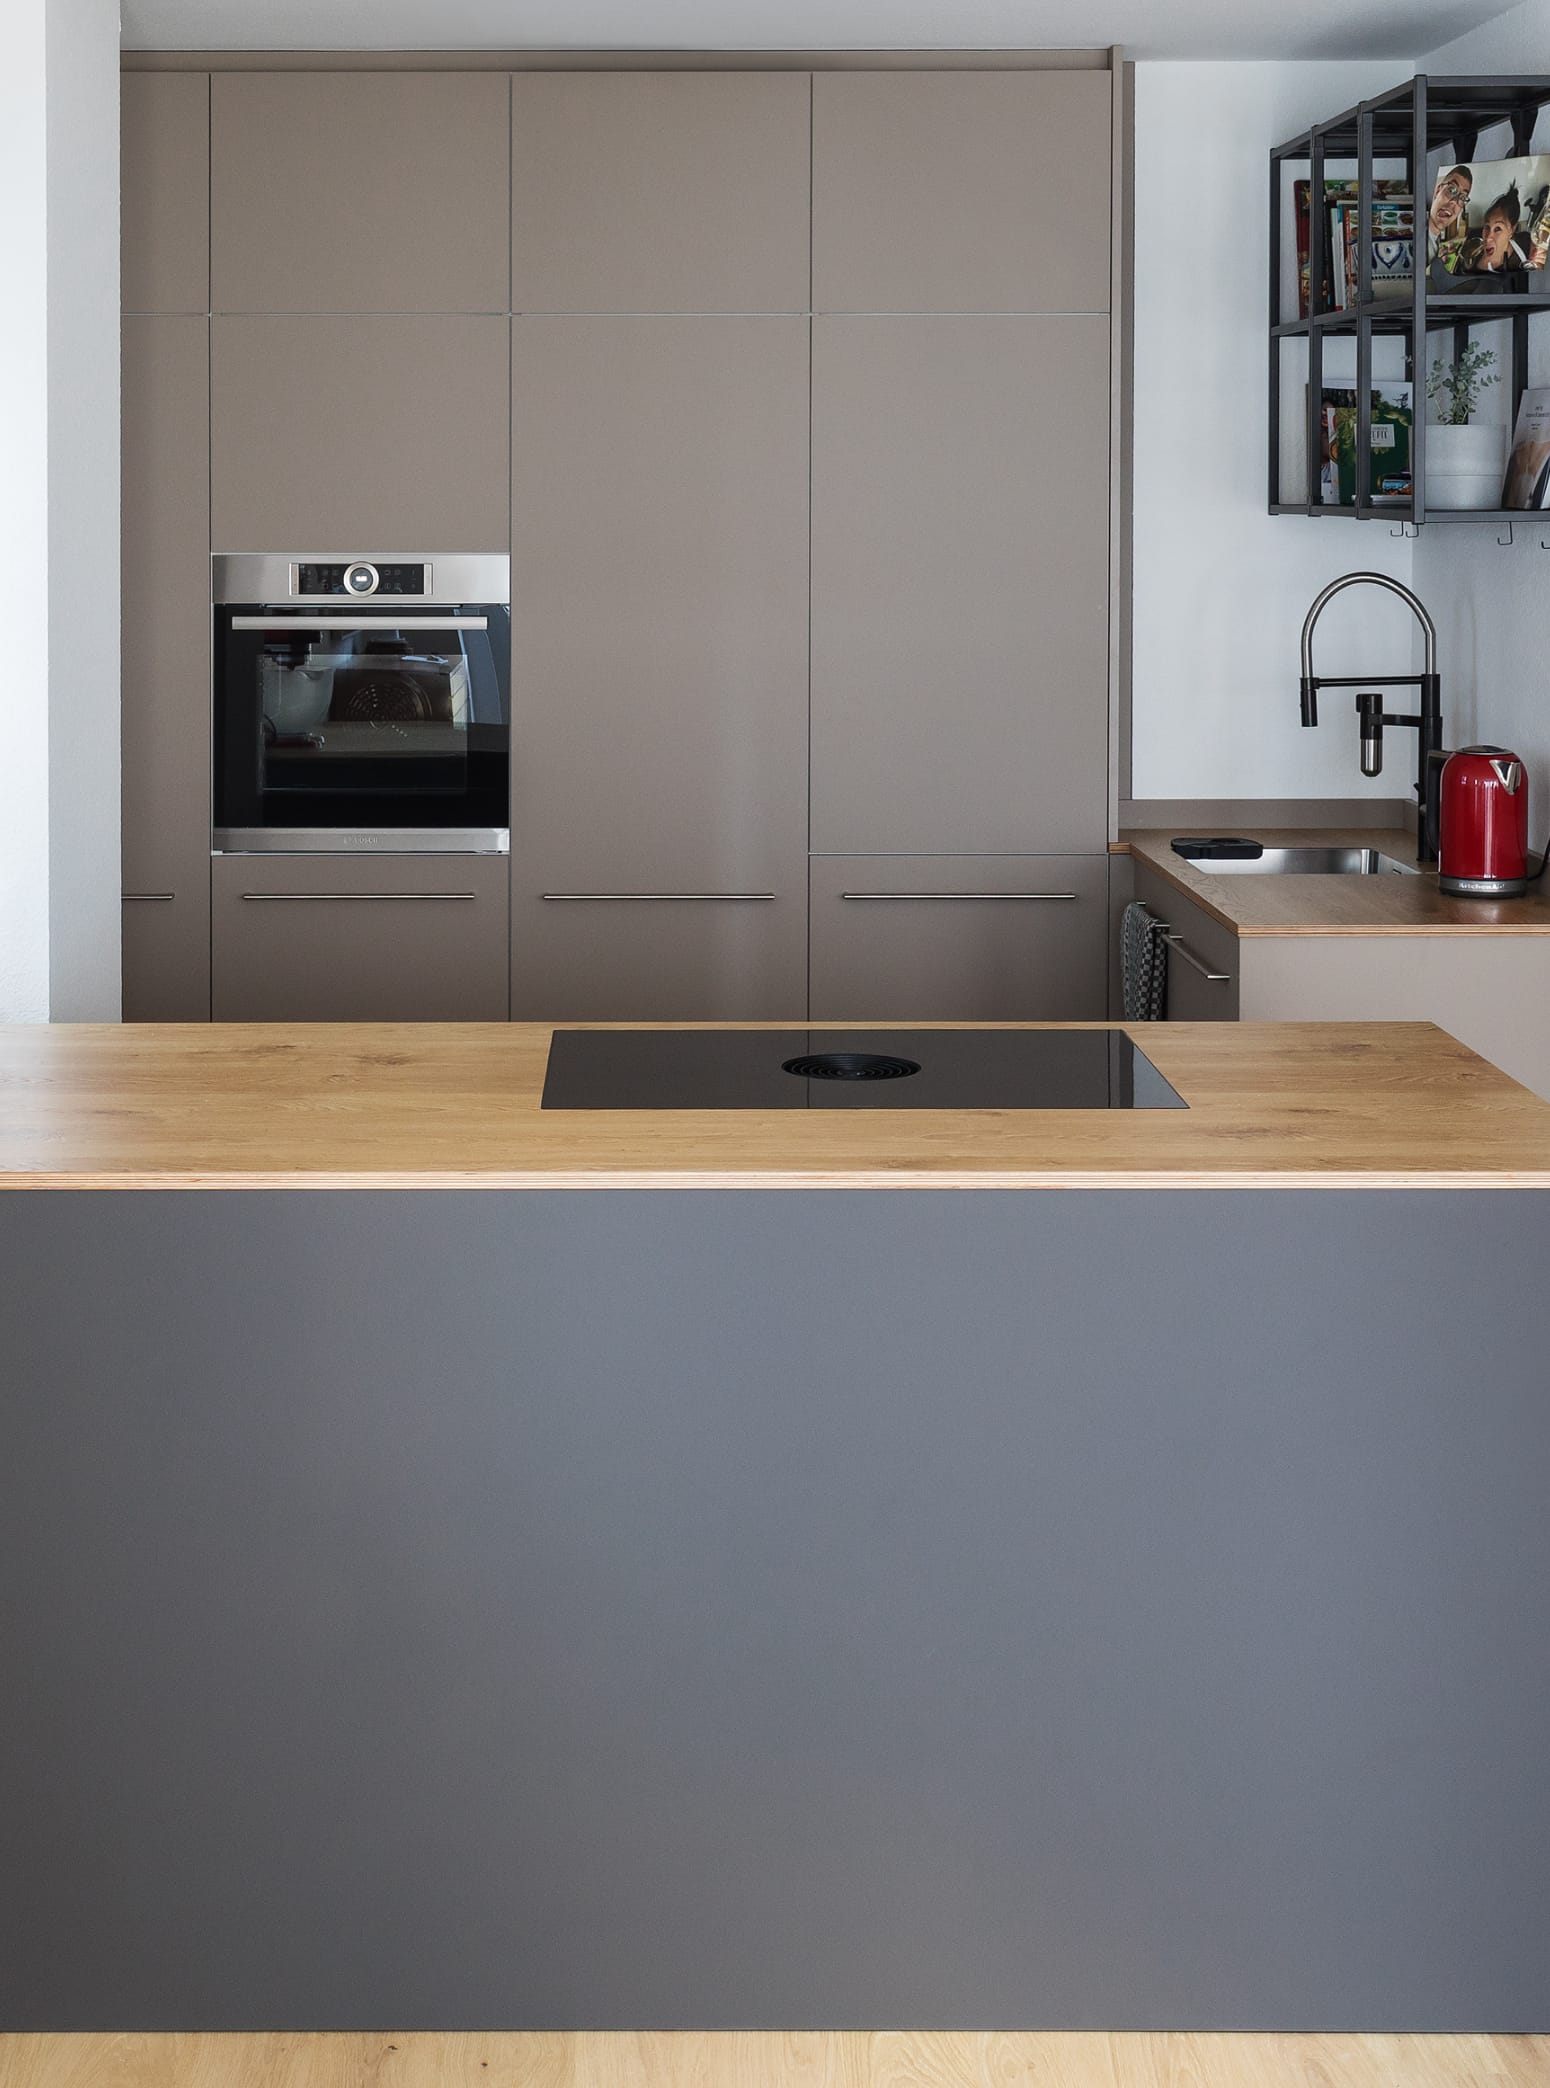 Offenes Raumkonzept mit farblich abgesetzten Küchenfronten